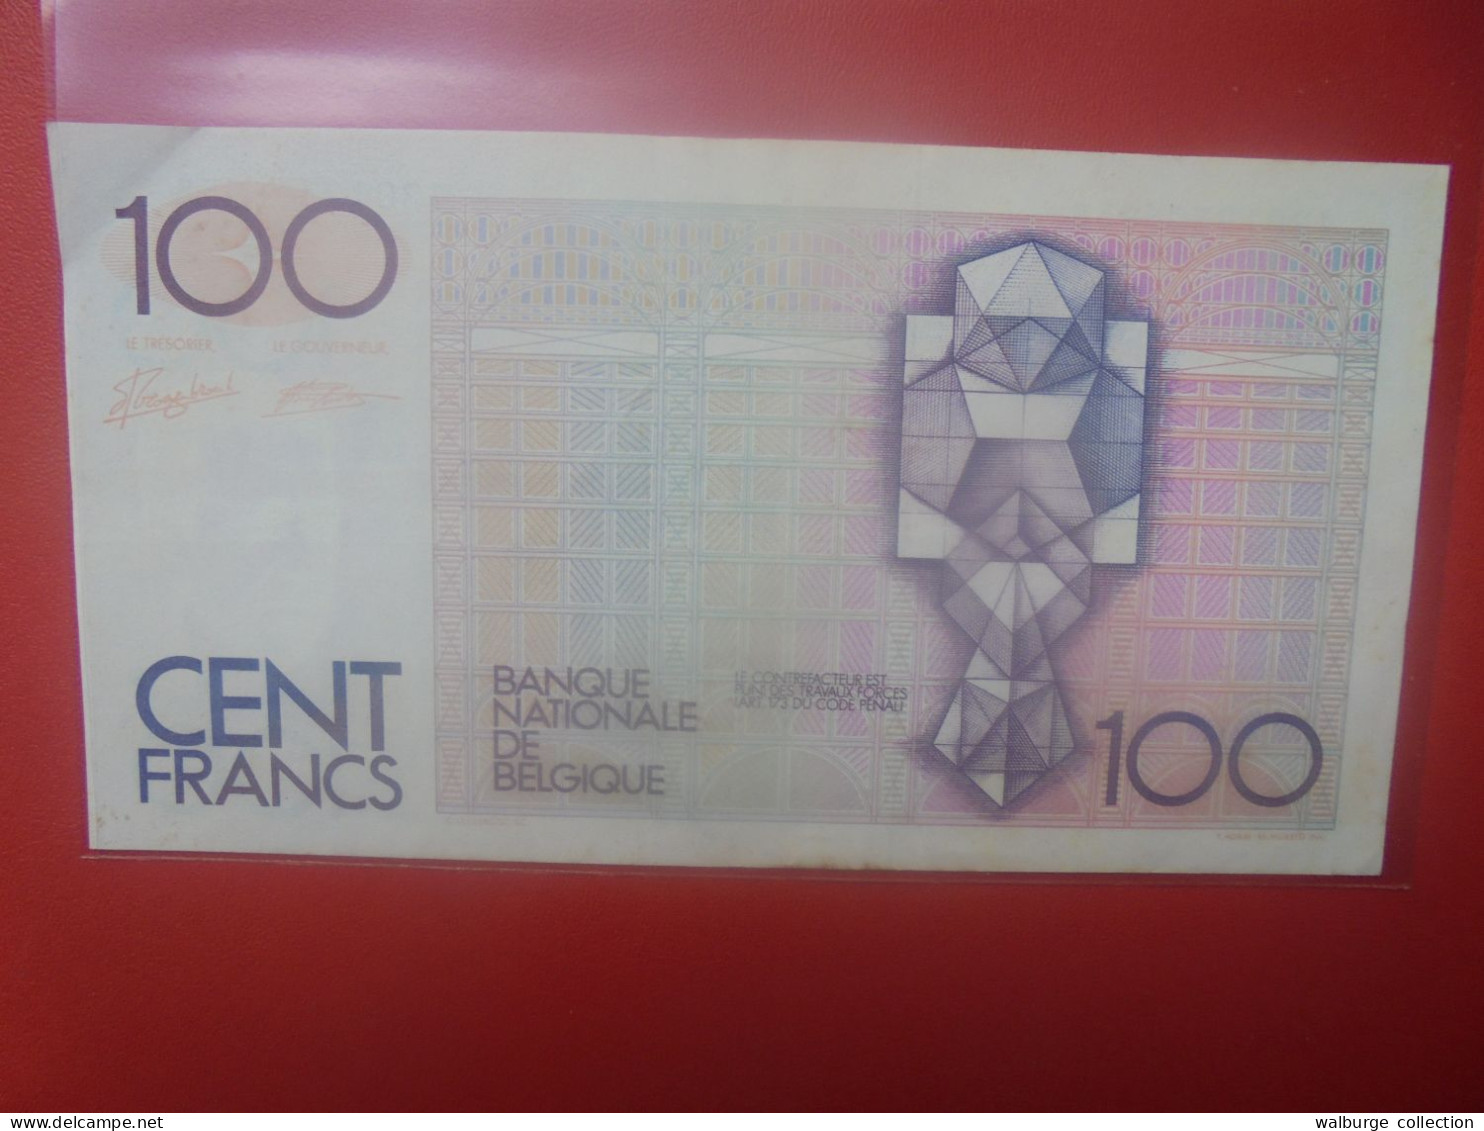 BELGIQUE 100 Francs 1982-94 Circuler (B.18) - 100 Frank